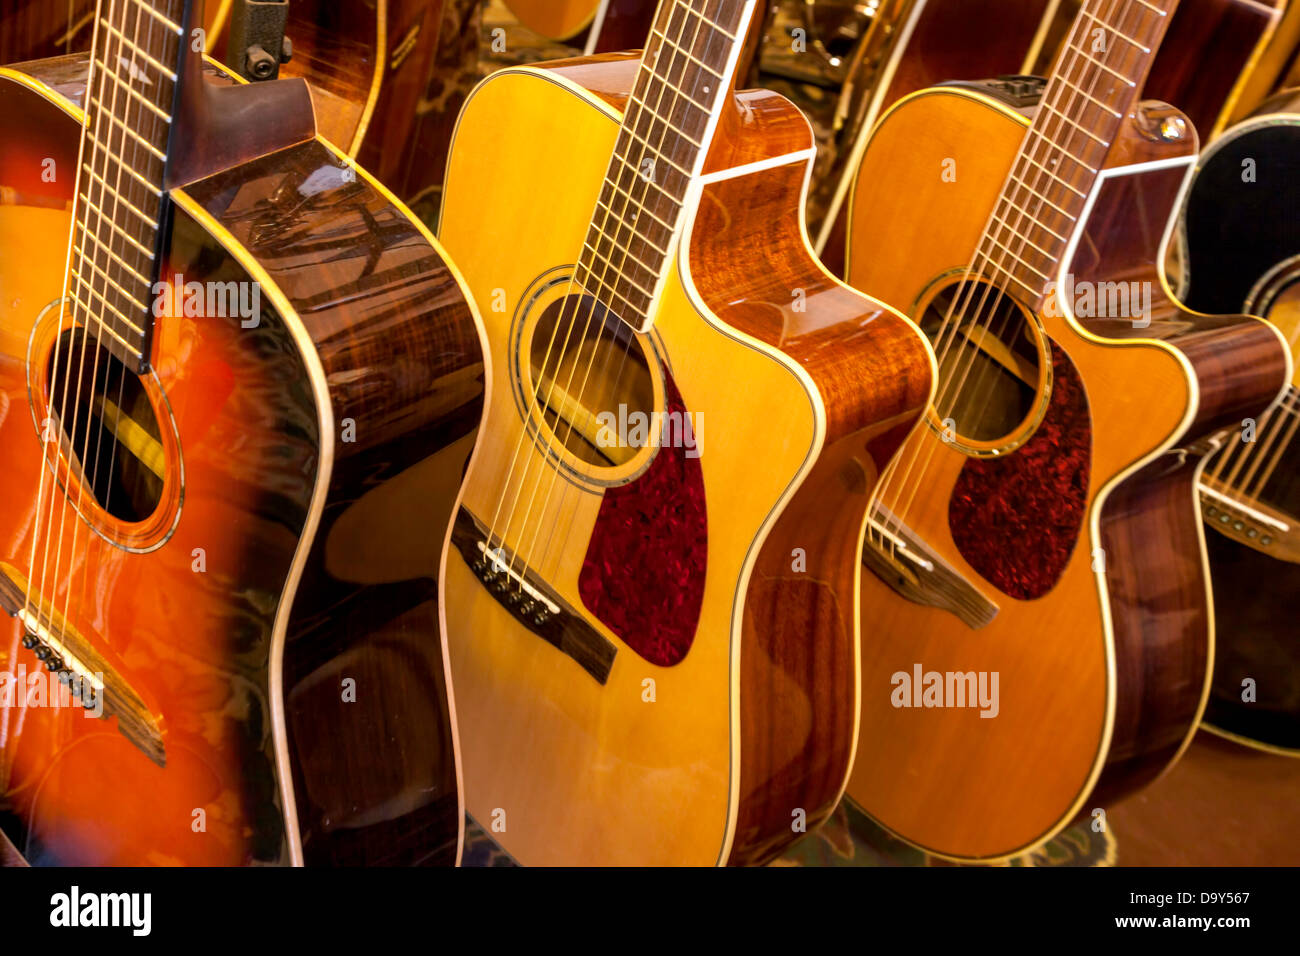 Il parafango e Alvarez chitarre acustiche sul display in un vintage negozio di musica in Micanopy, Florida. Foto Stock